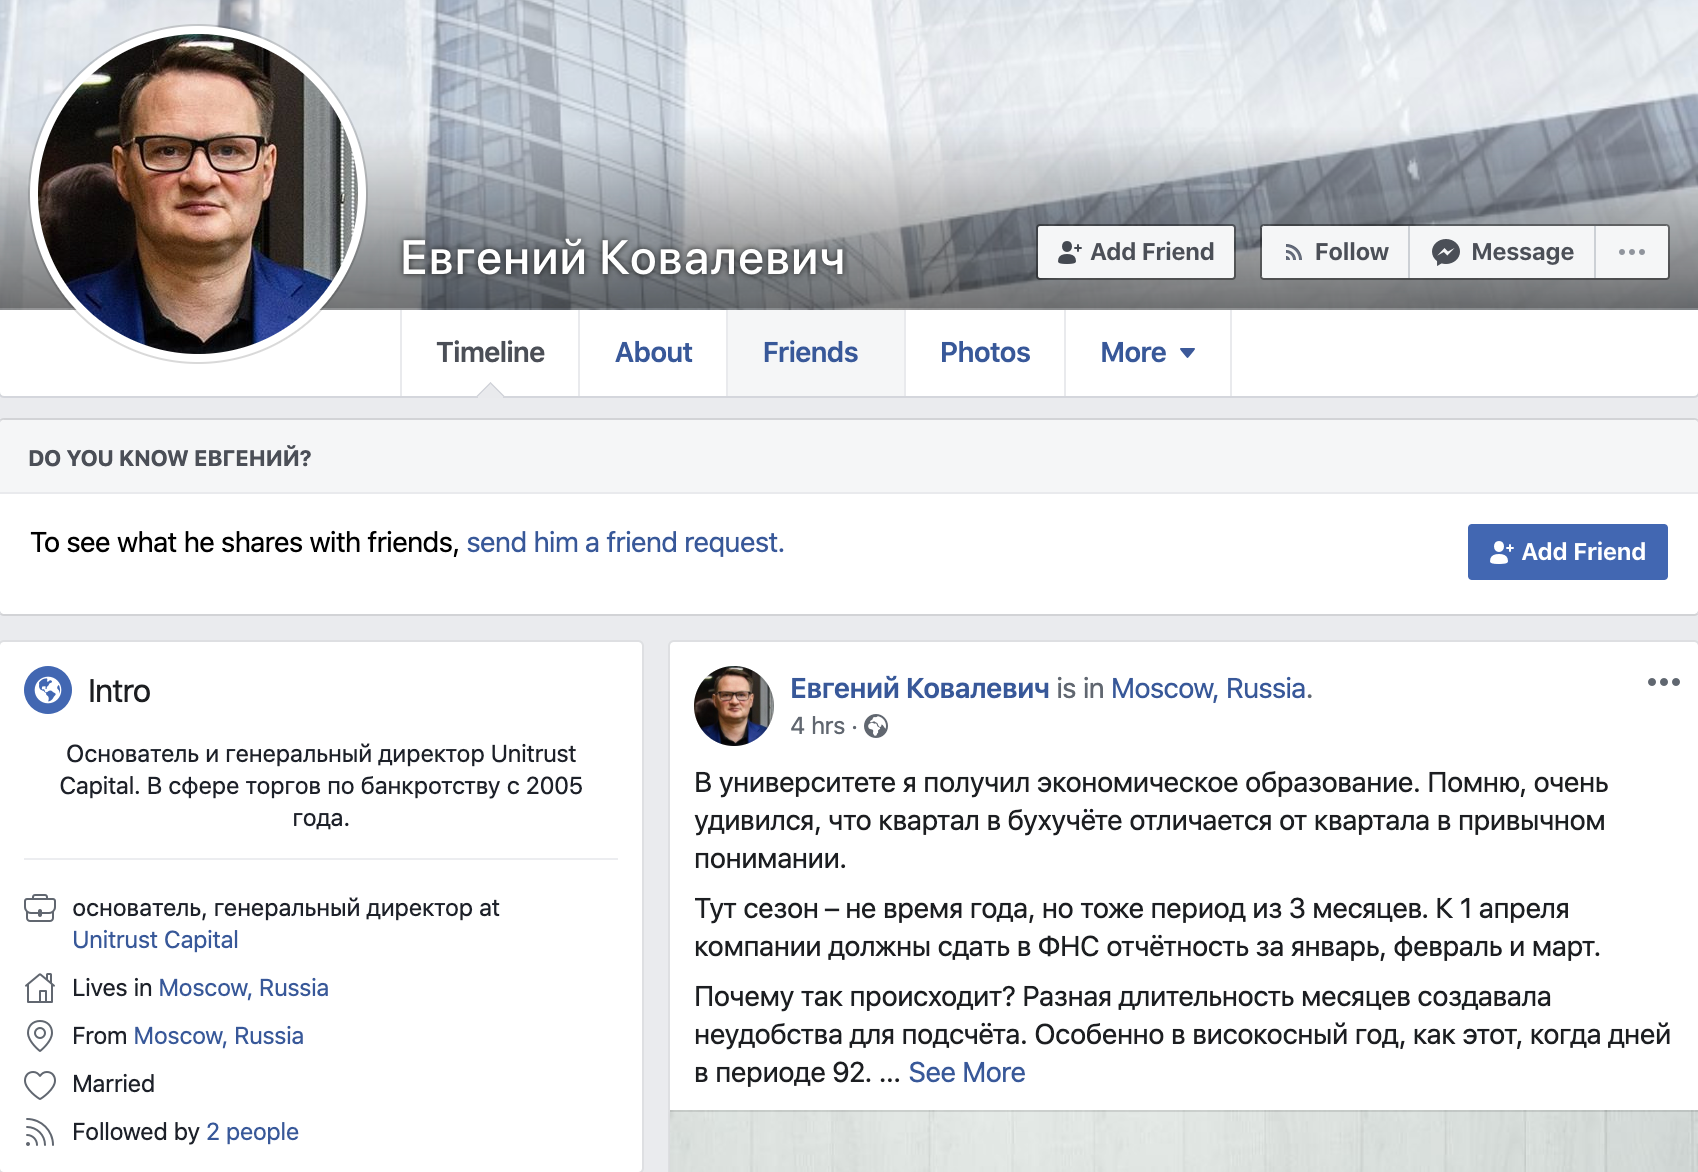 Гендиром «Юнитраста» называют Евгения Ковалевича, и «Руспрофайл» это подтверждает. Сайт компании пишет об опыте работы с 2005 года, то же самое Ковалевич пишет на своей странице в Фейсбуке. Но указывает только работу в «Юнитрасте» — притом что компанию основали в 2018